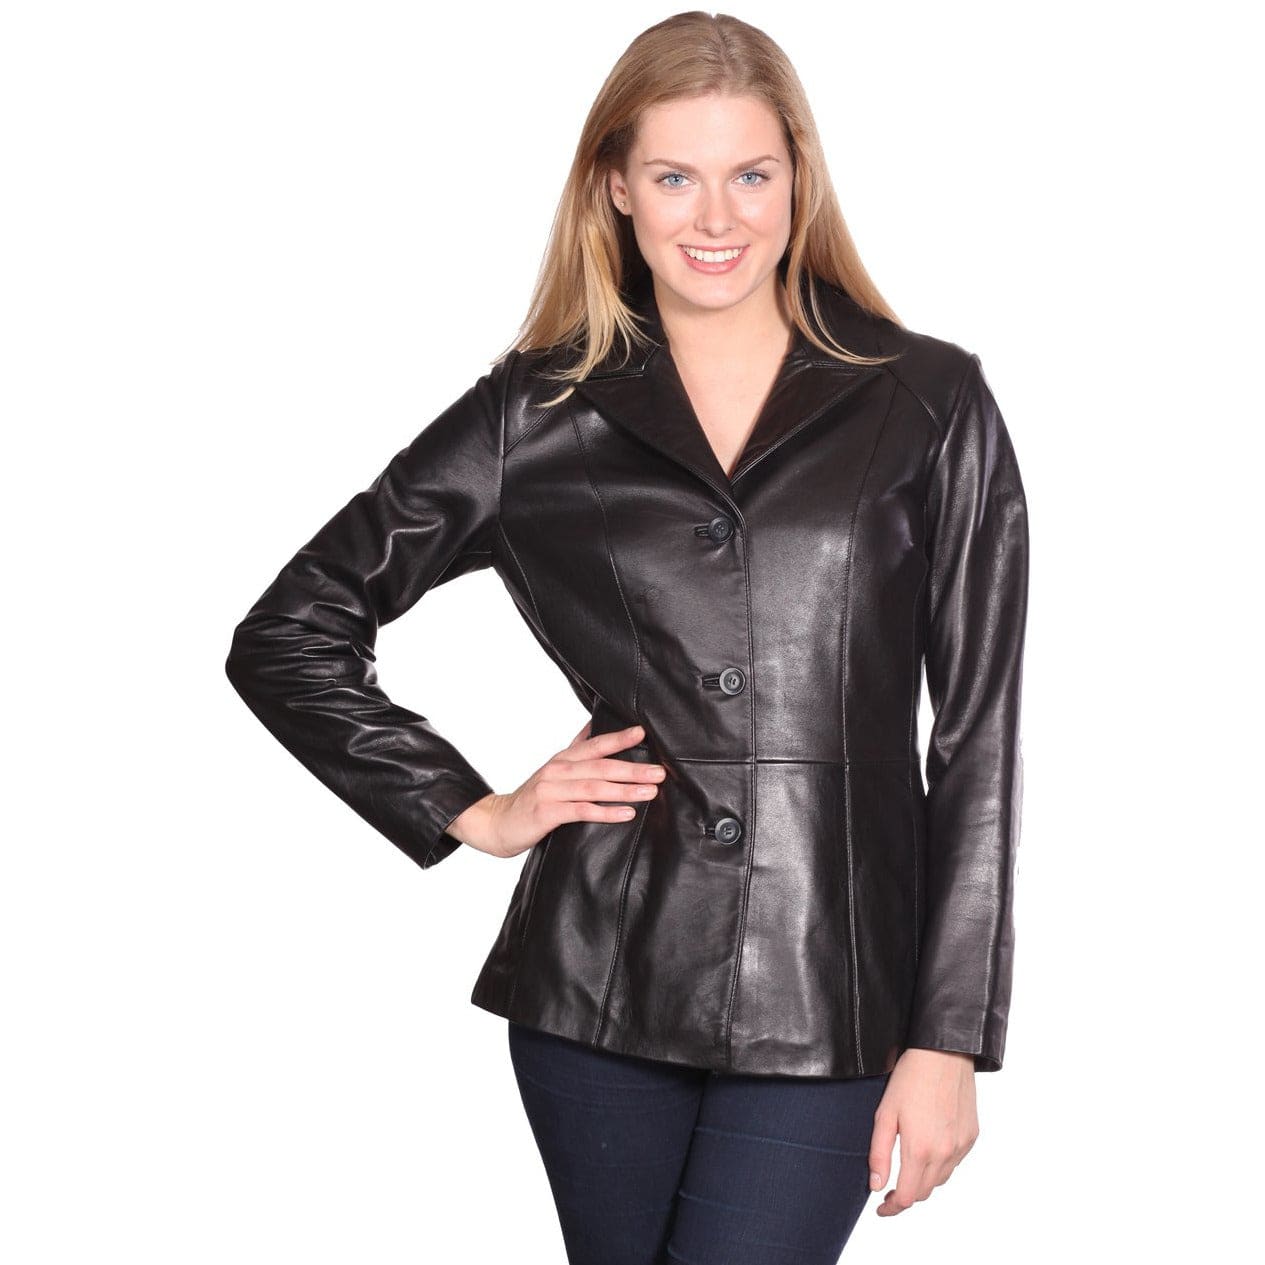 Mason & Cooper Women's Leather Blazer Jacket - Zooloo Leather